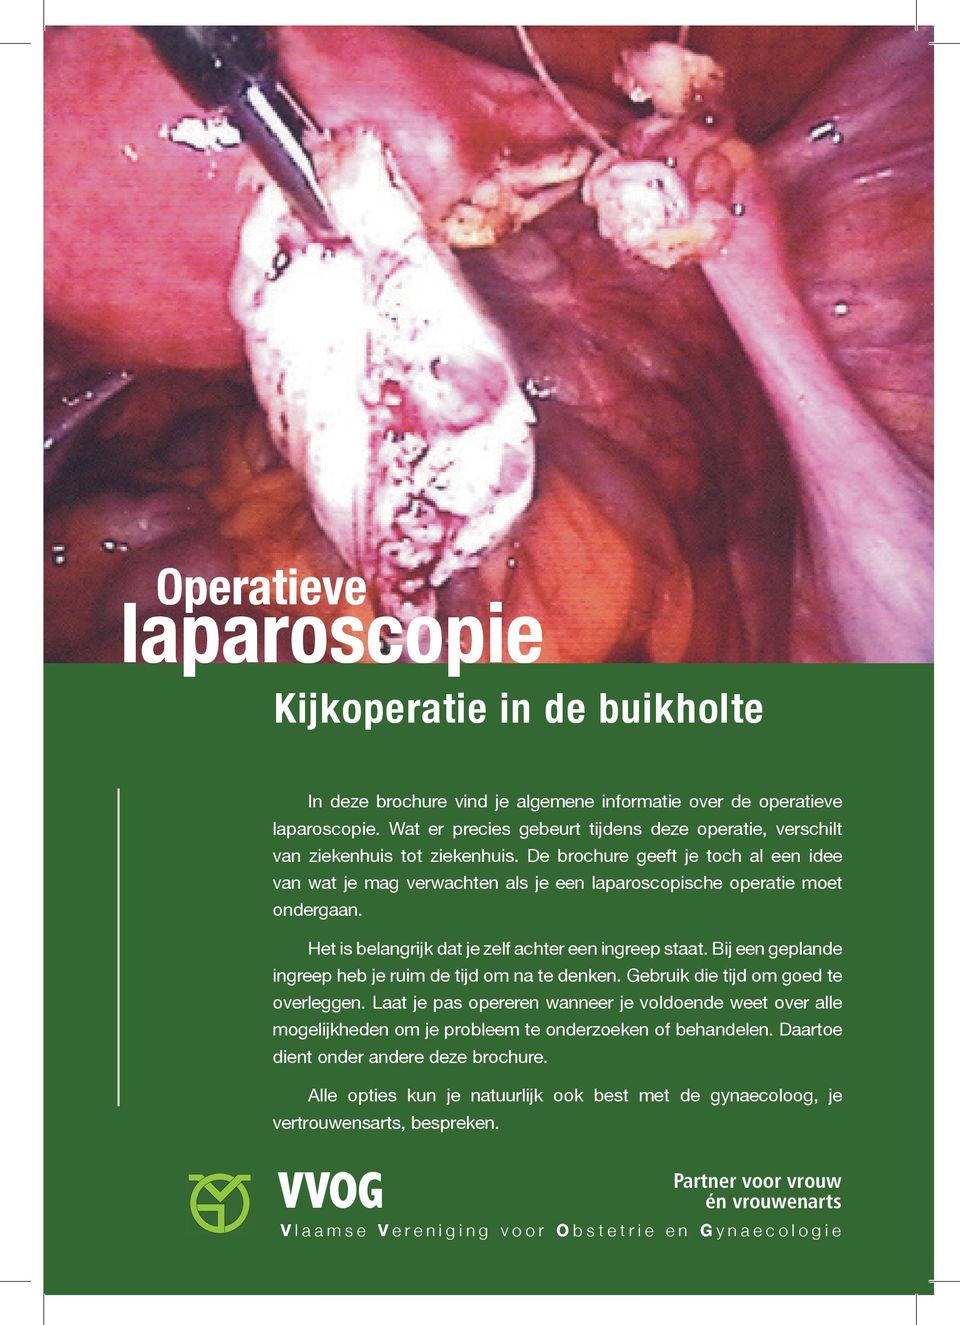 De brochure geeft je toch al een idee van wat je mag verwachten als je een laparoscopische operatie moet ondergaan. Het is belangrijk dat je zelf achter een ingreep staat.